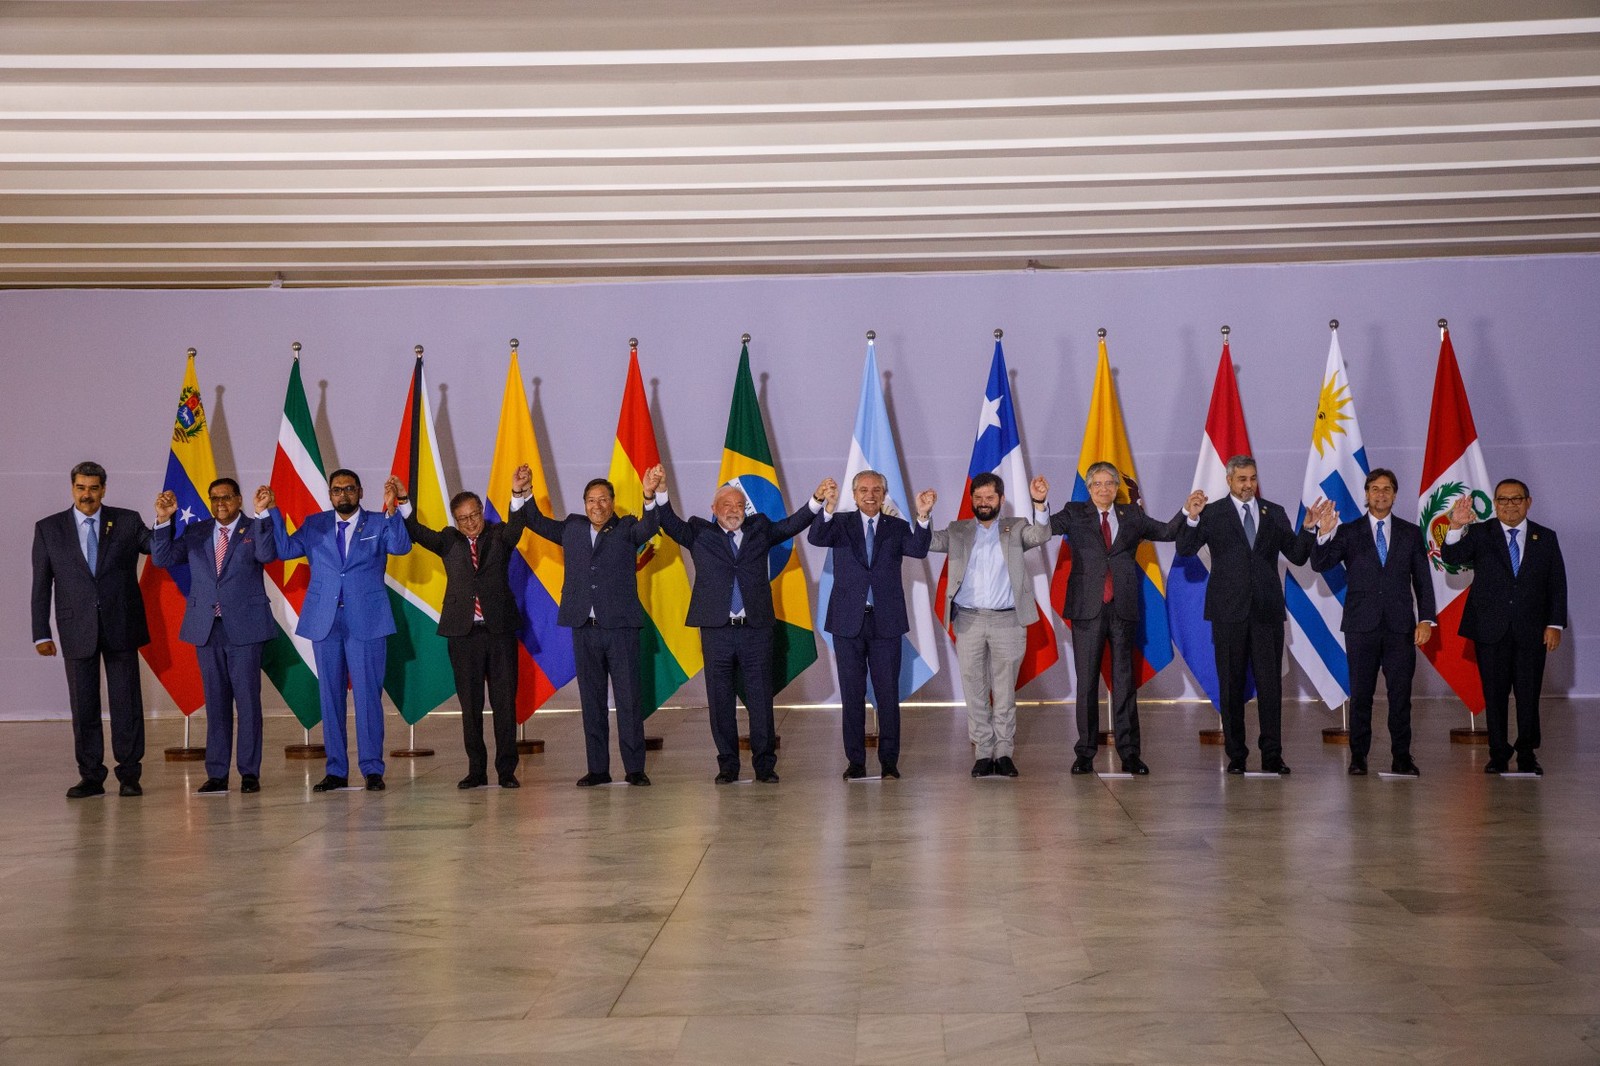 Lula posa com chefes de Estado da Venezuela, Suriname, Guiana, Colômbia, Bolívia, Argentina, Chile, Equador, Paraguai, Uruguai e Peru. — Foto: Brenno Carvalho / Agência O Globo